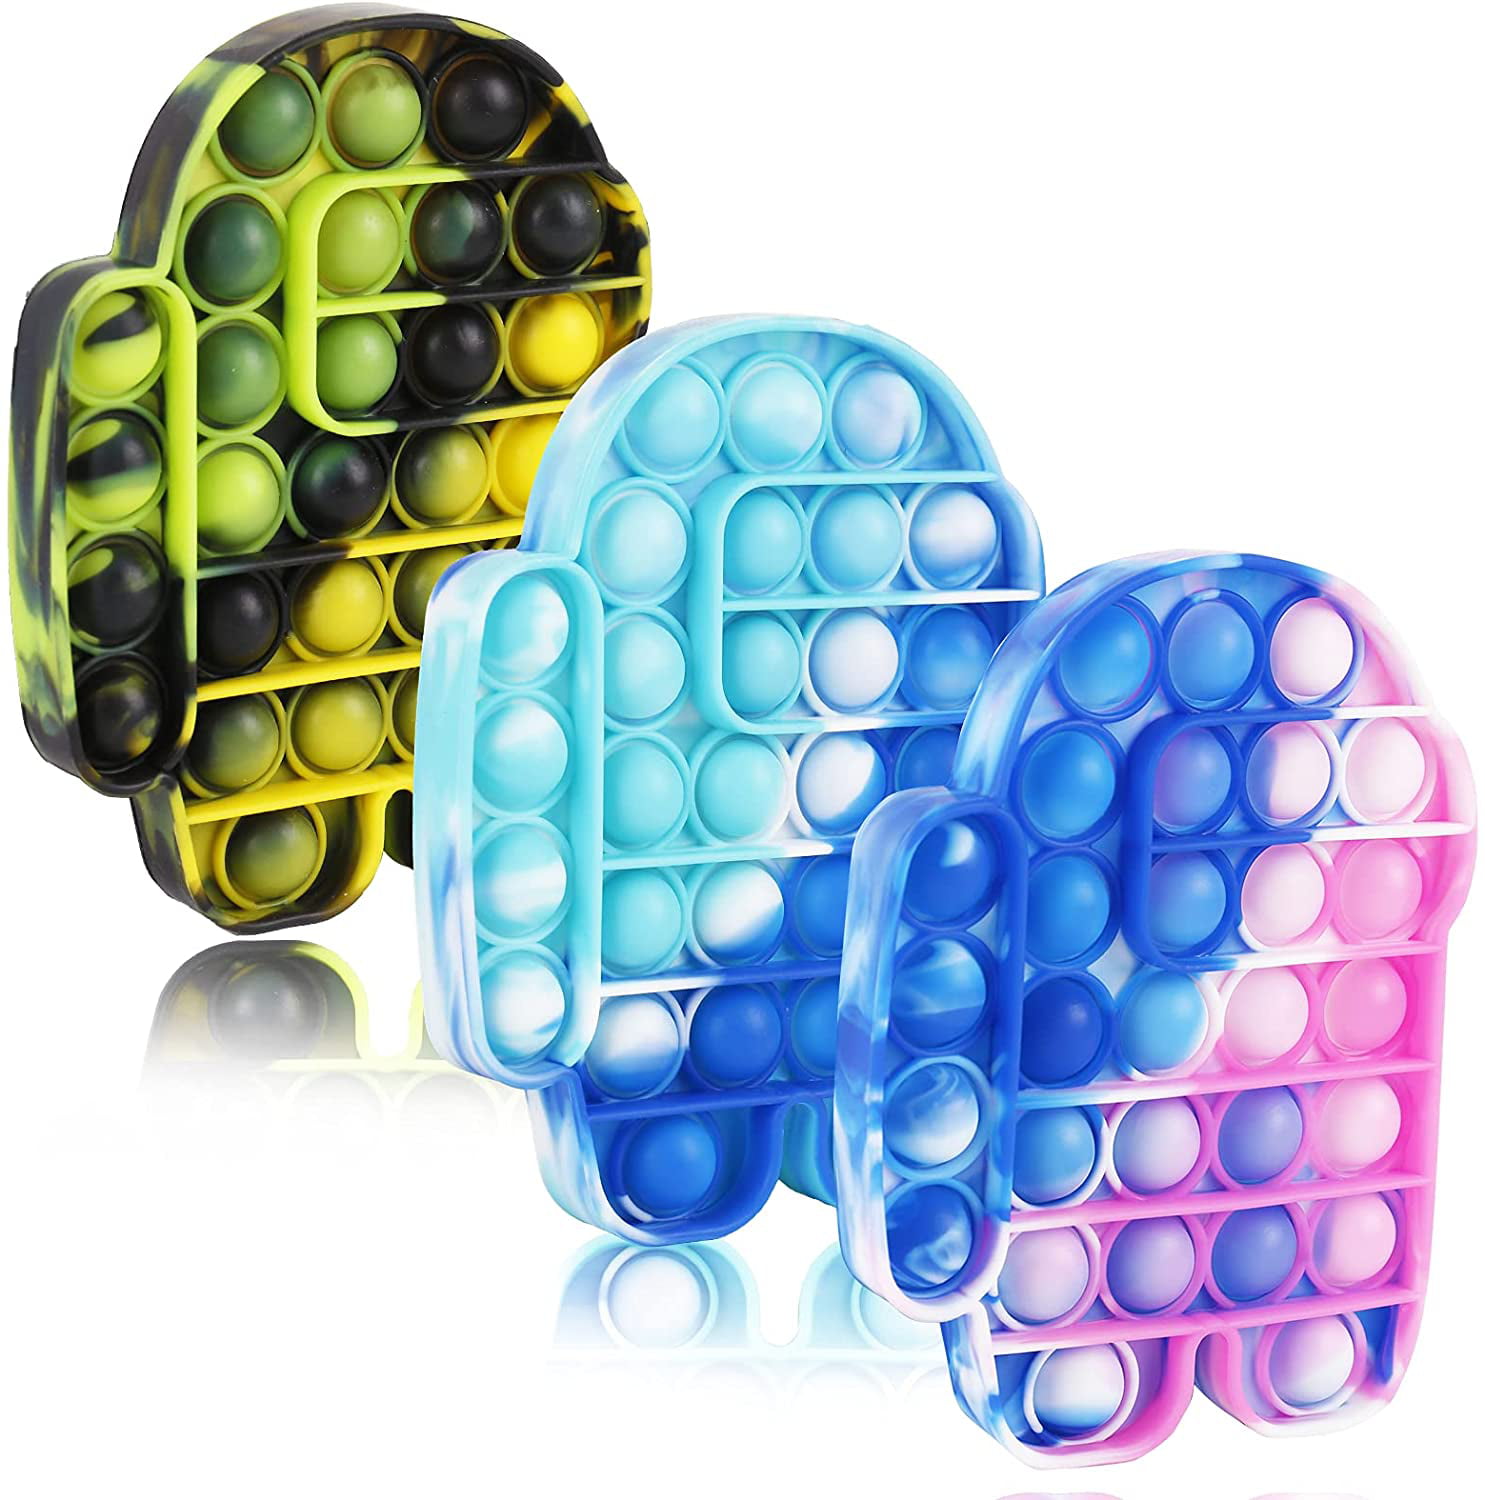 Details about   Fidget Toy Pop Its Square Push Bubble Stress Relief Kids Anti-Stress Sensory Gam 